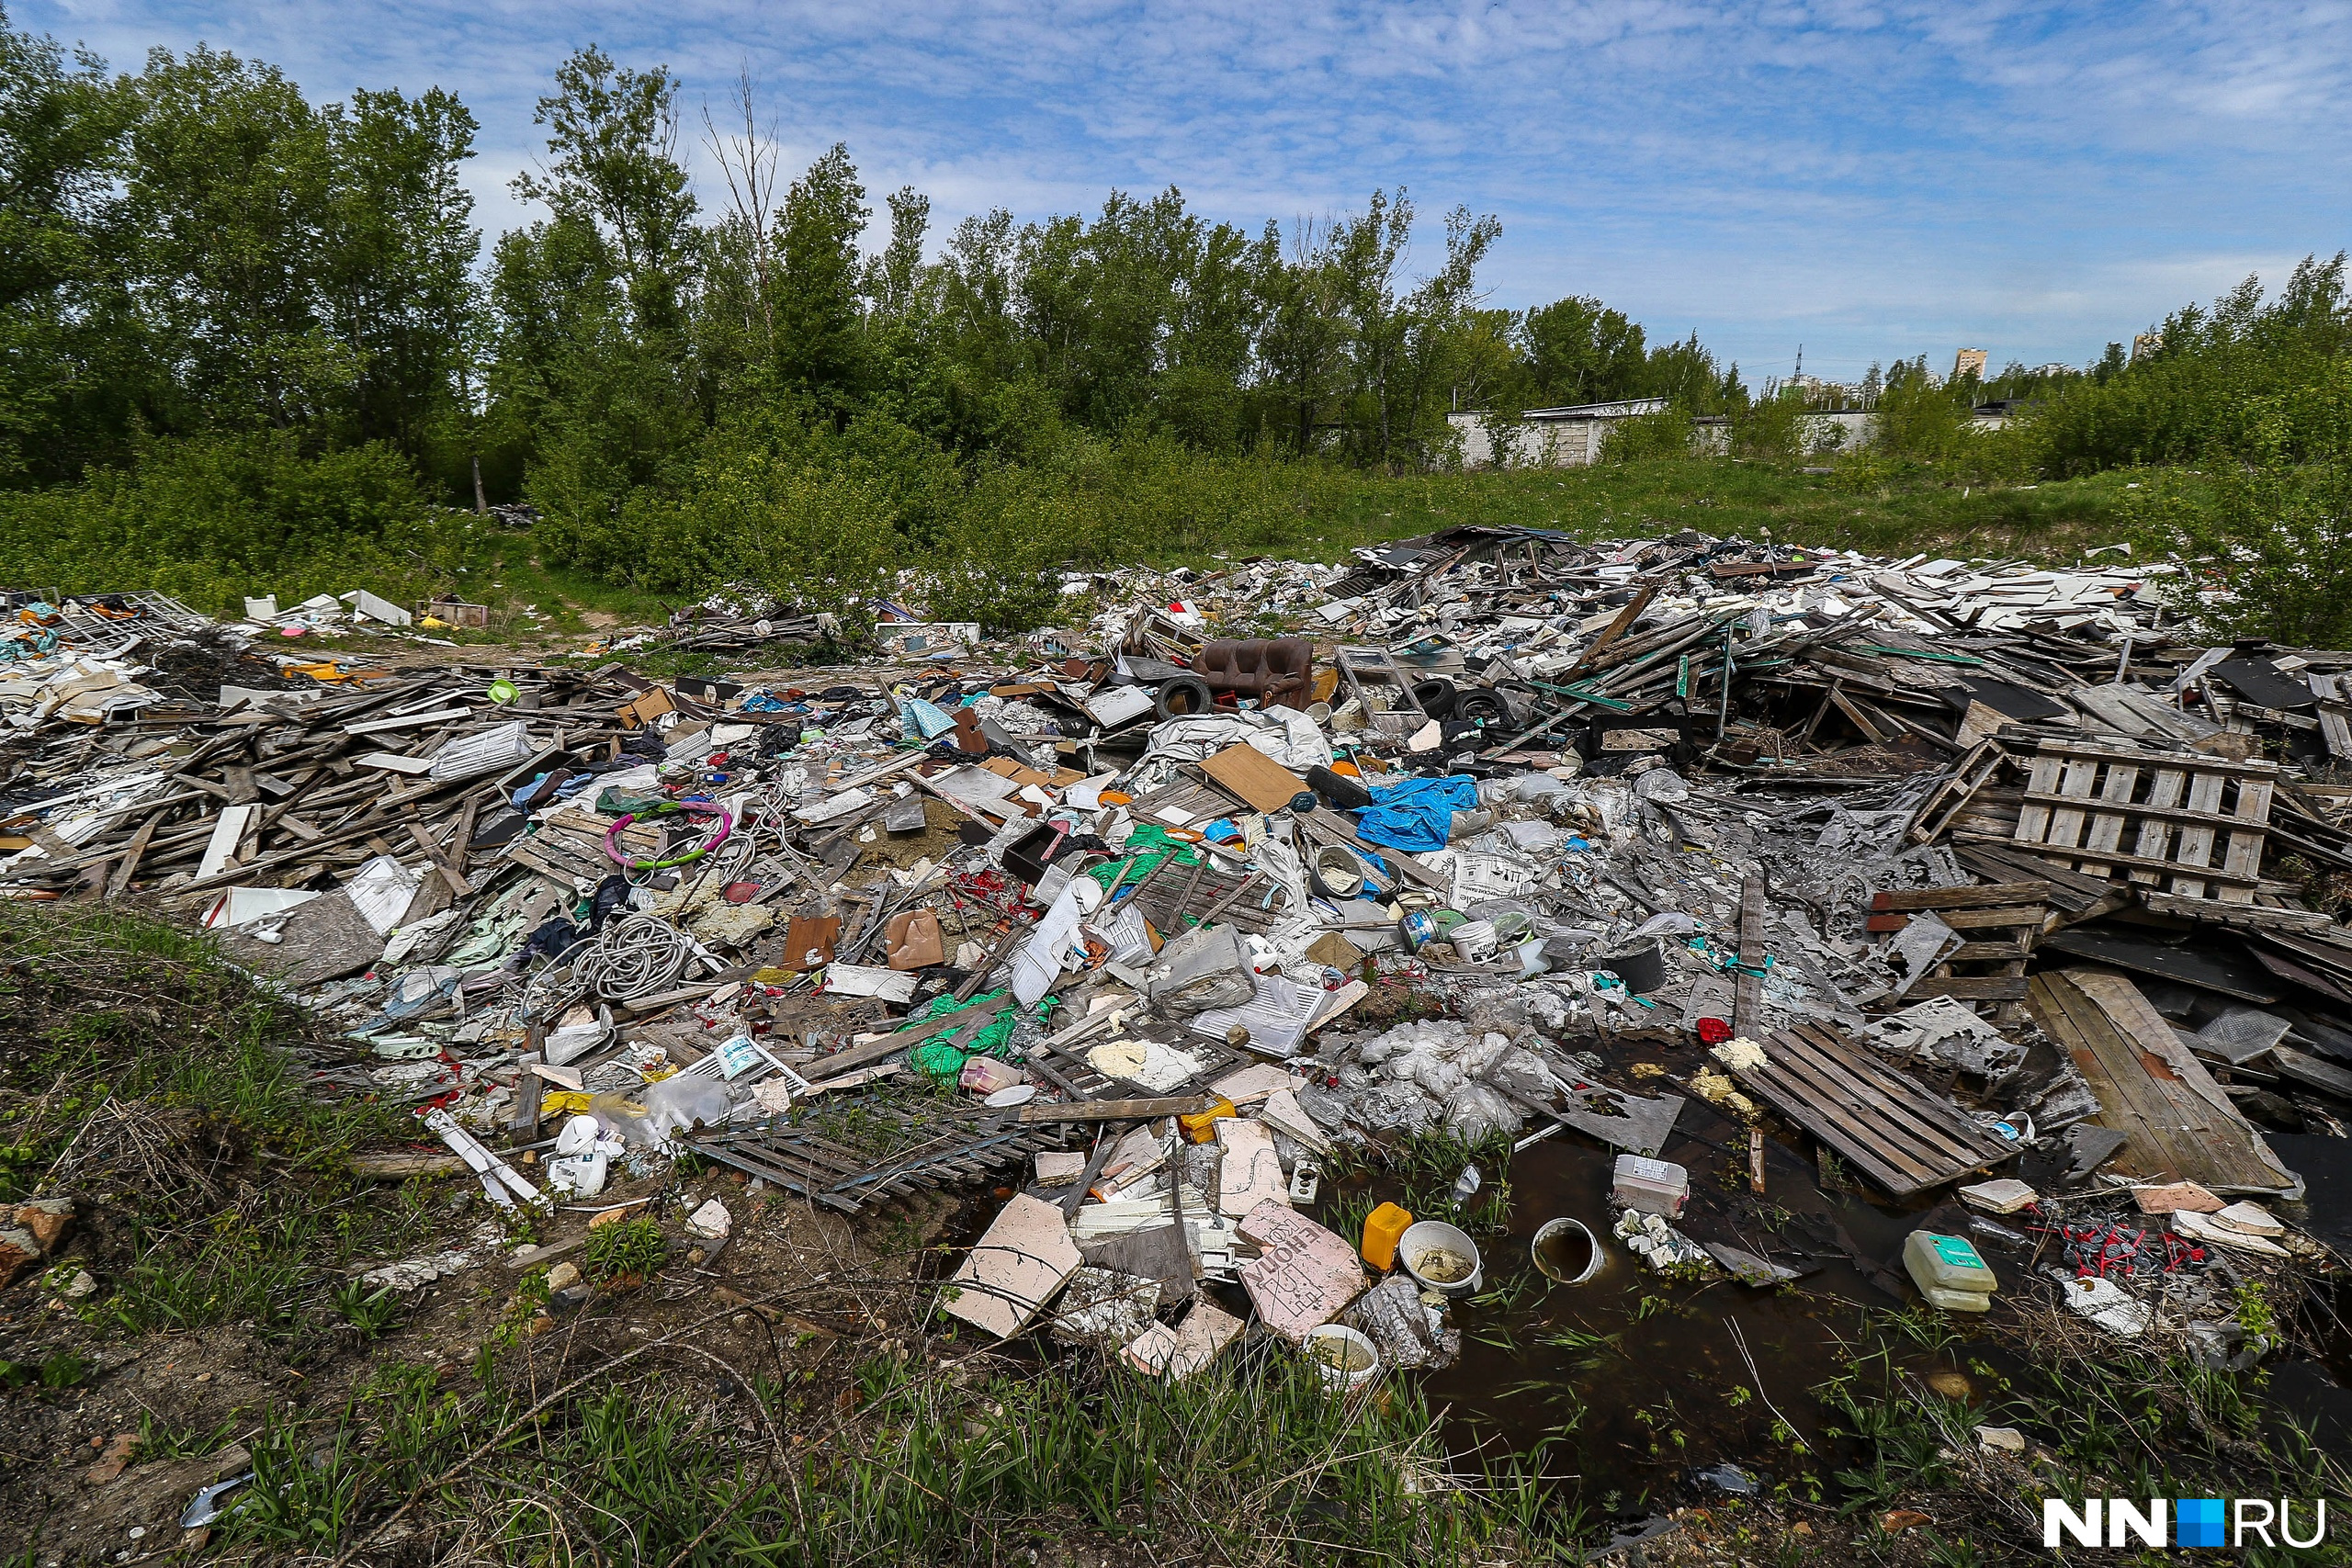 Поляна хлама. Огромную помойку из стройматериалов и бытового мусора устроили в Нижнем Новгороде